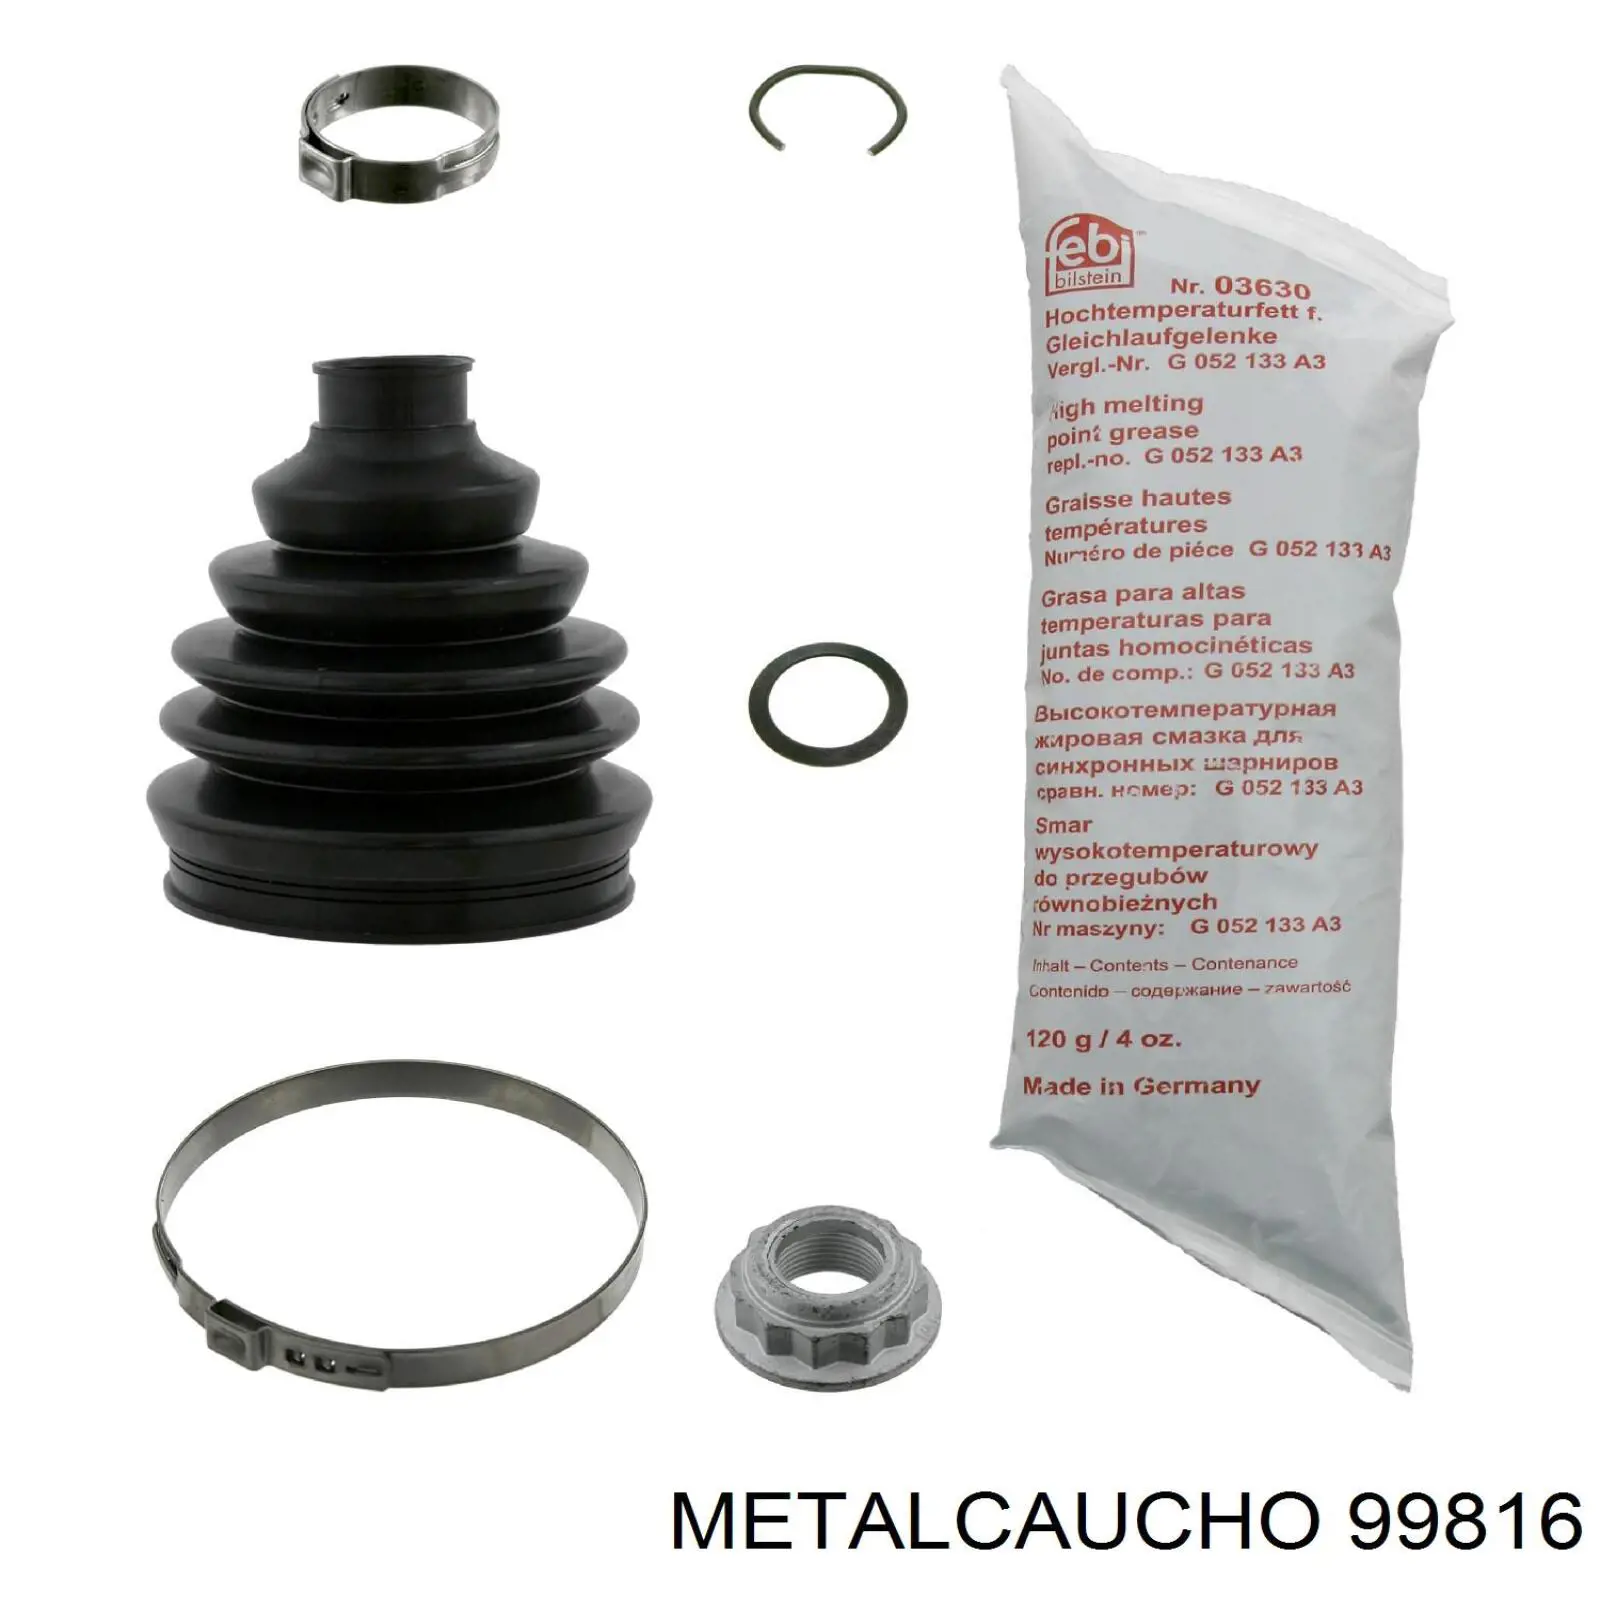 99816 Metalcaucho tubo (manguera Para Drenar El Aceite De Una Turbina)